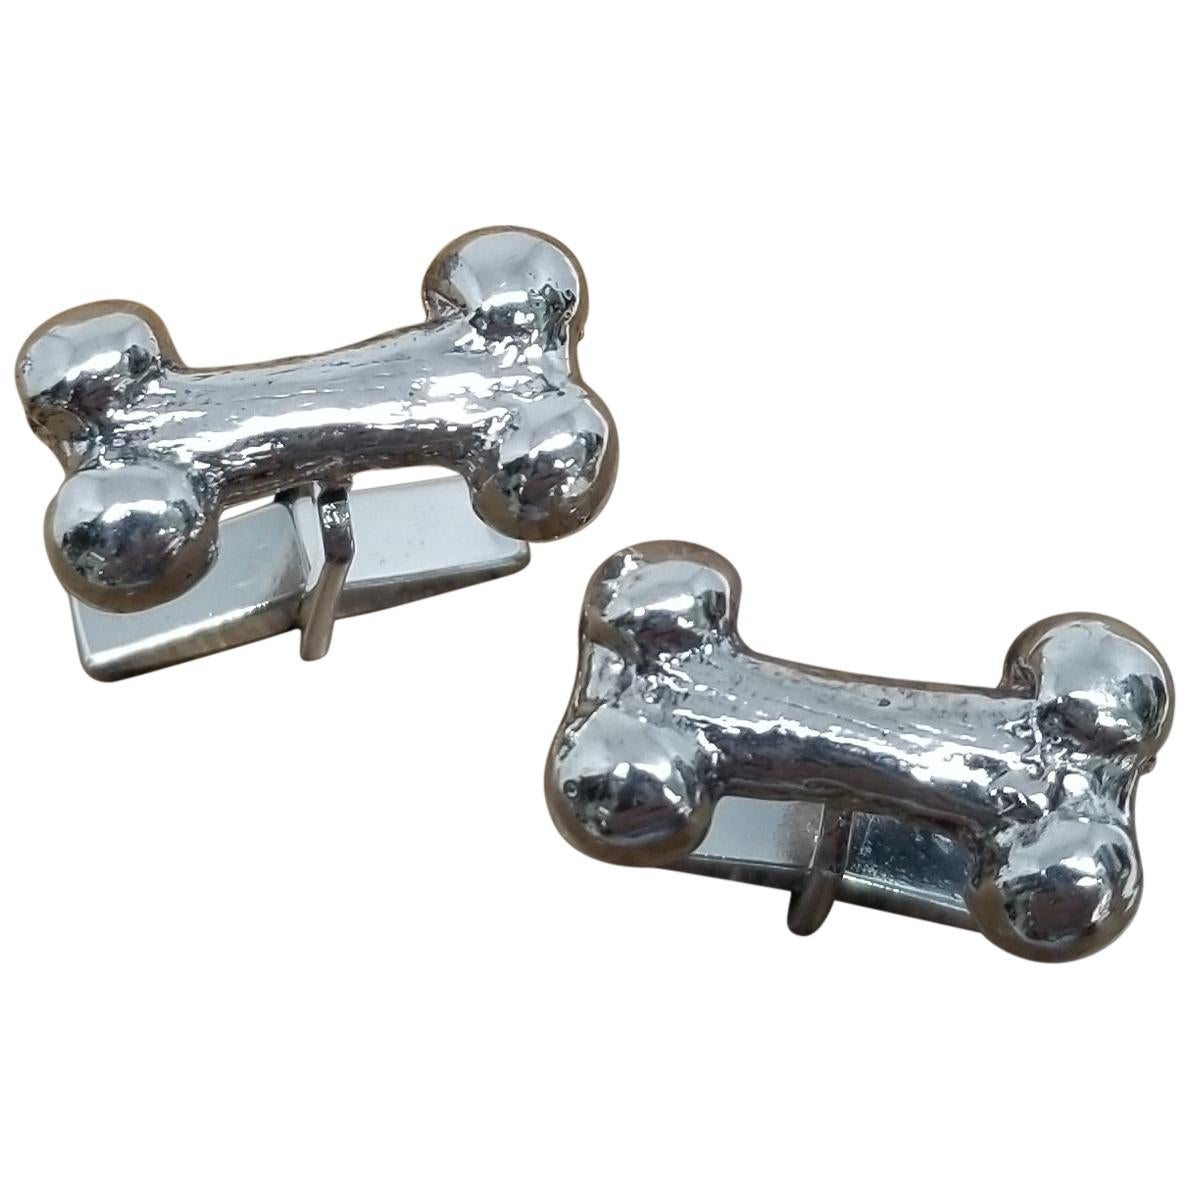 Classic Sterling Silver Pair Solid "Dog Bone" of Cuff Links (paire de boutons de manchette en argent massif)